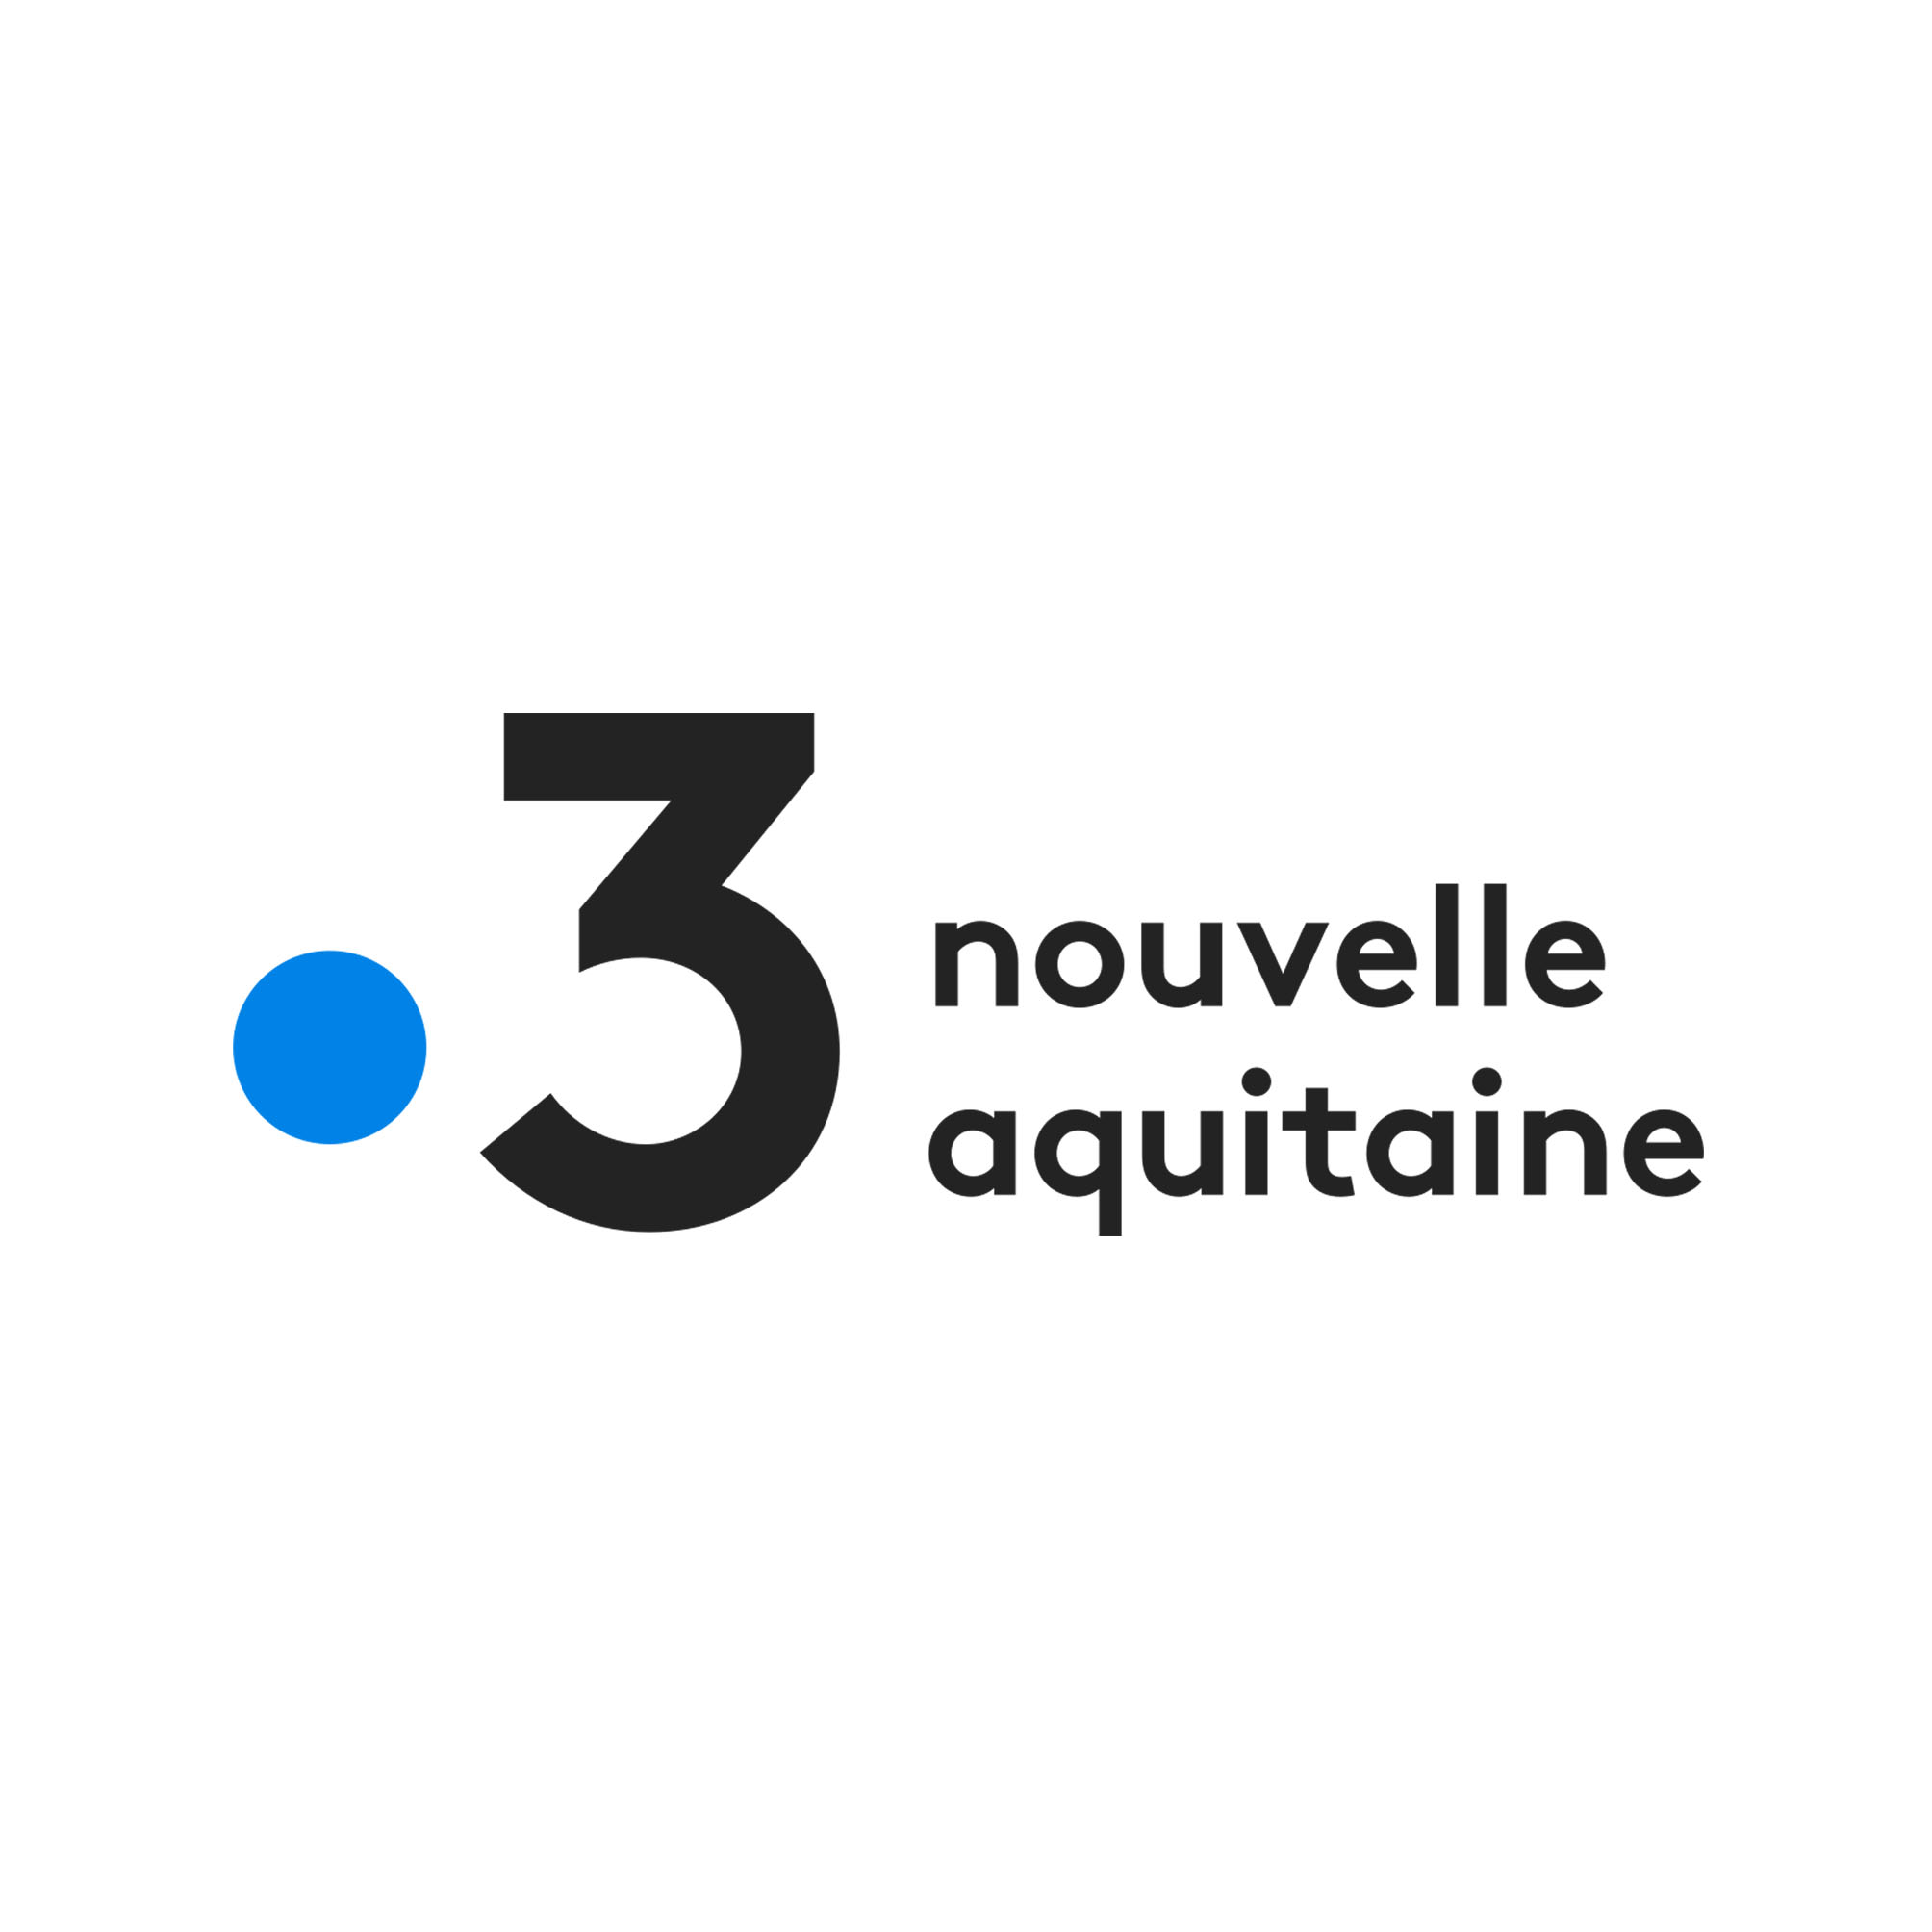 France3 NouvelleAquitaine